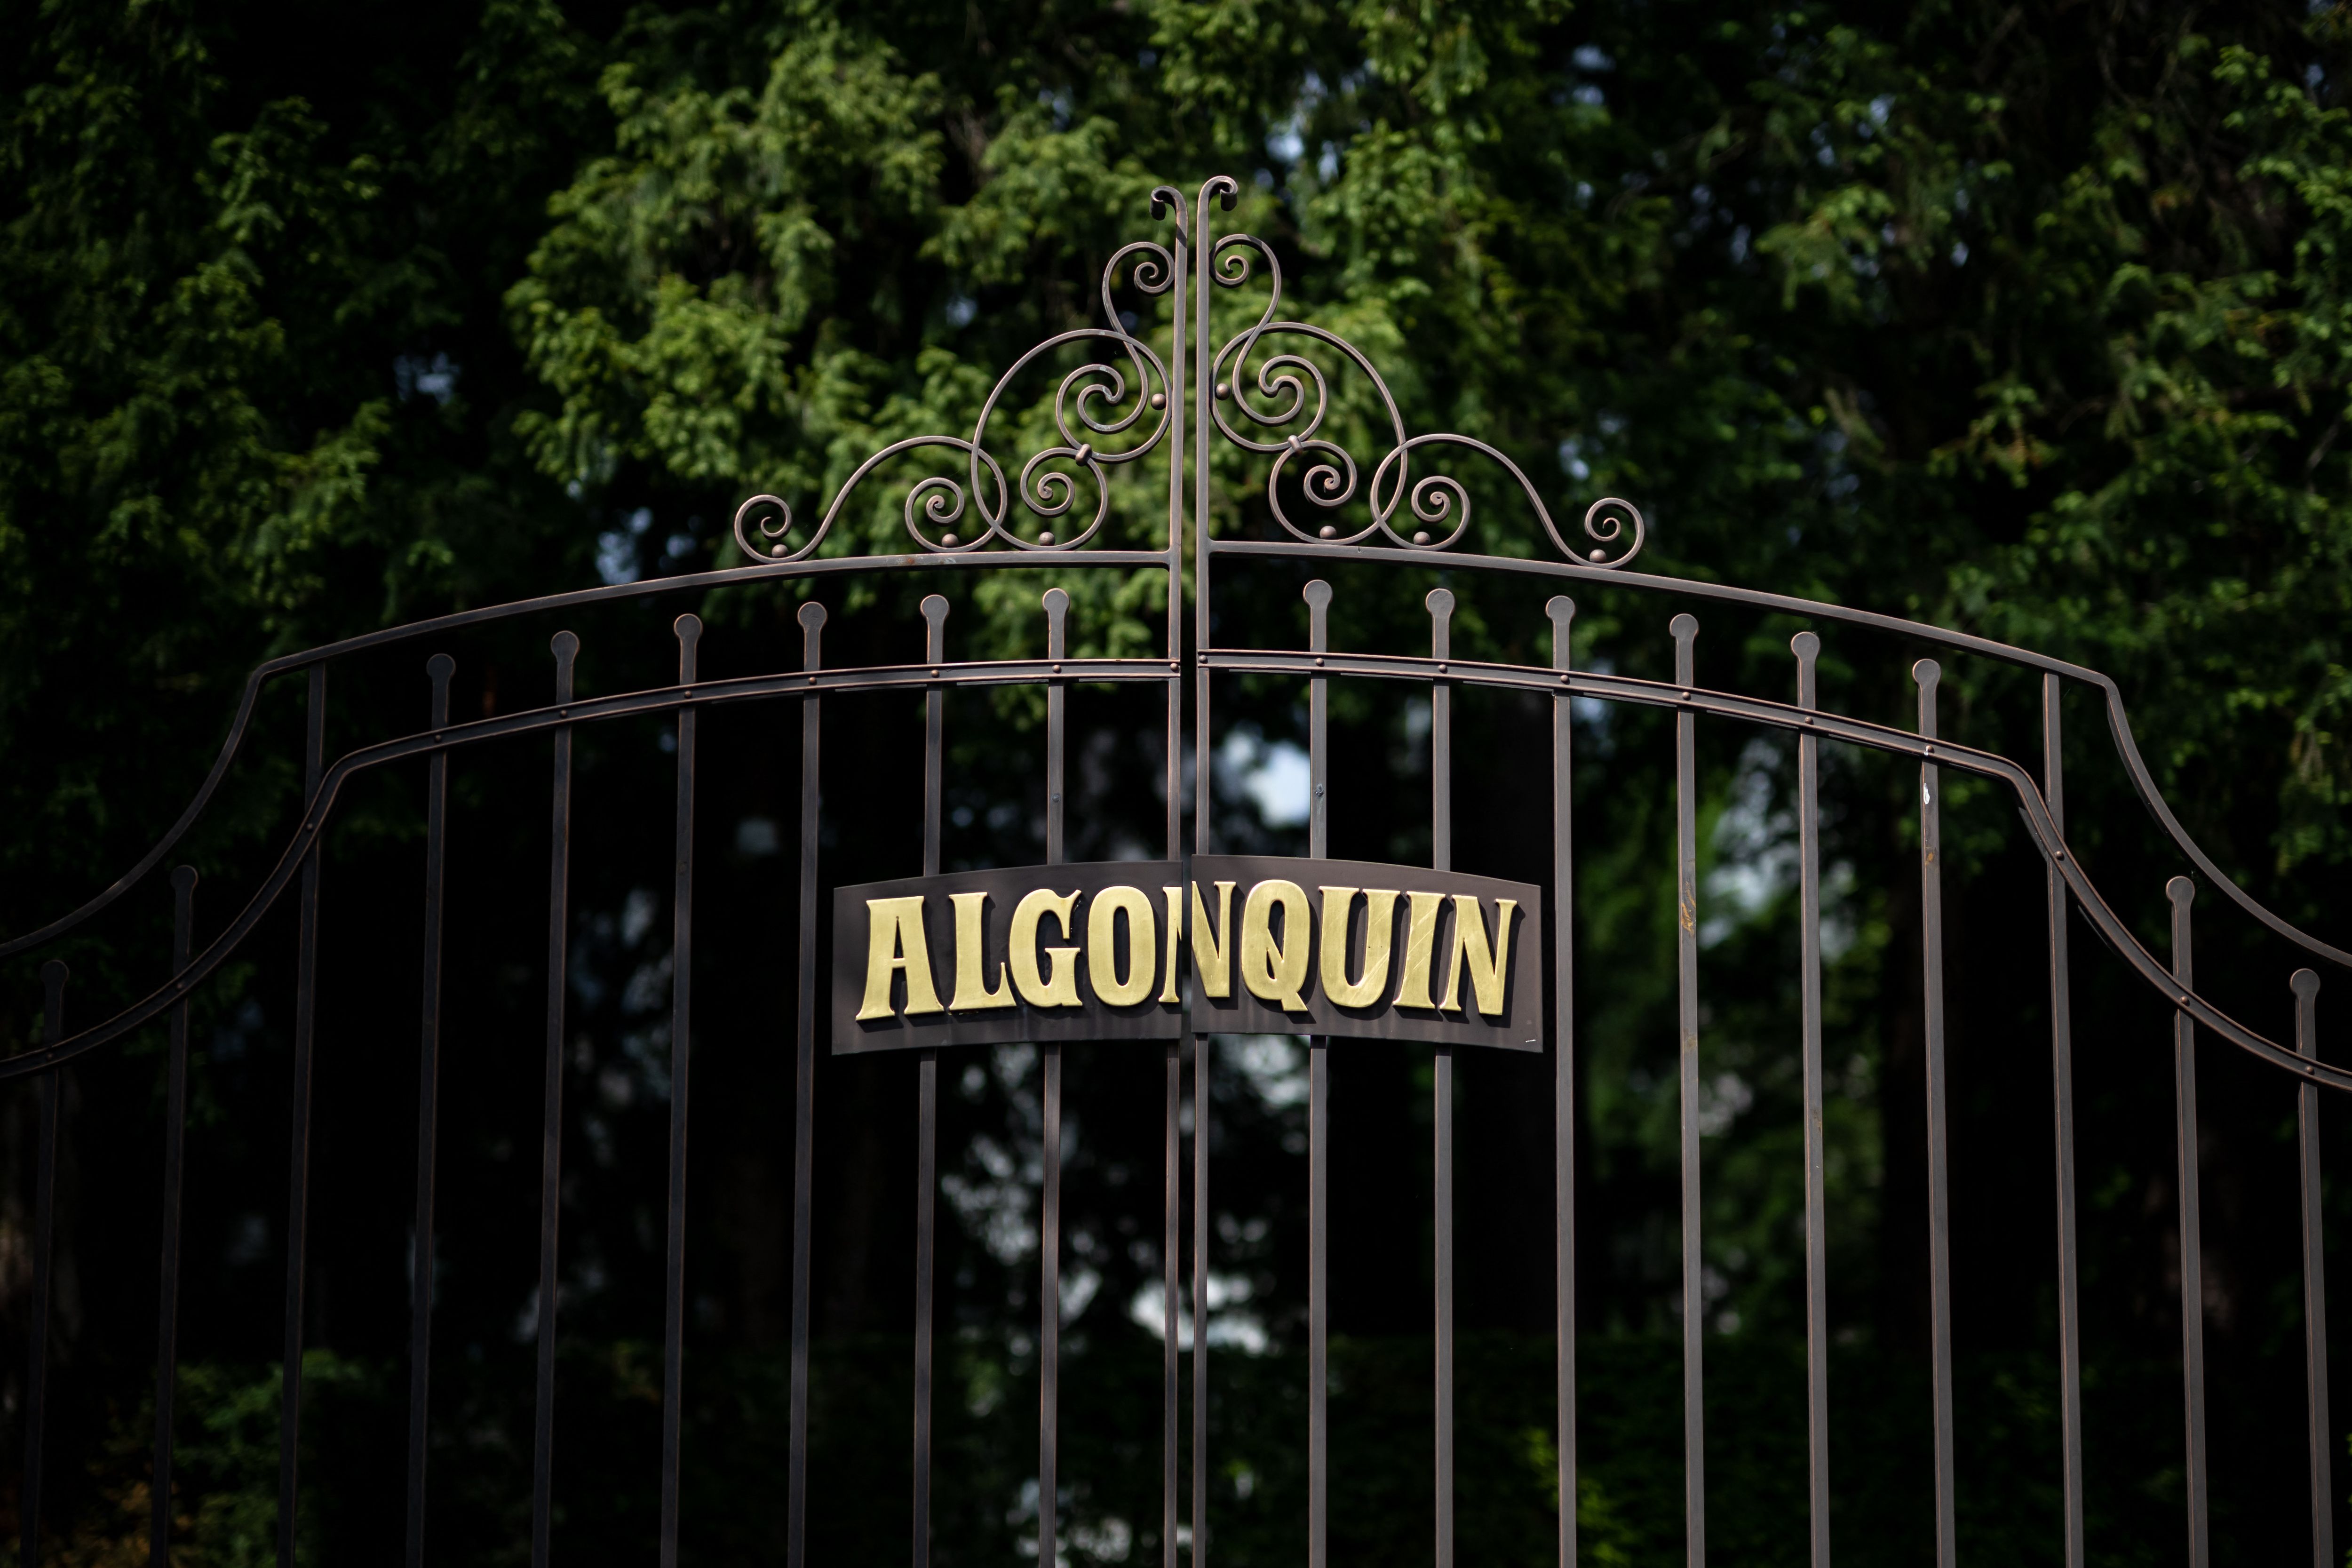 Le portail du Château Algonquin, la maison de Turner en Suisse | Source : Getty Images